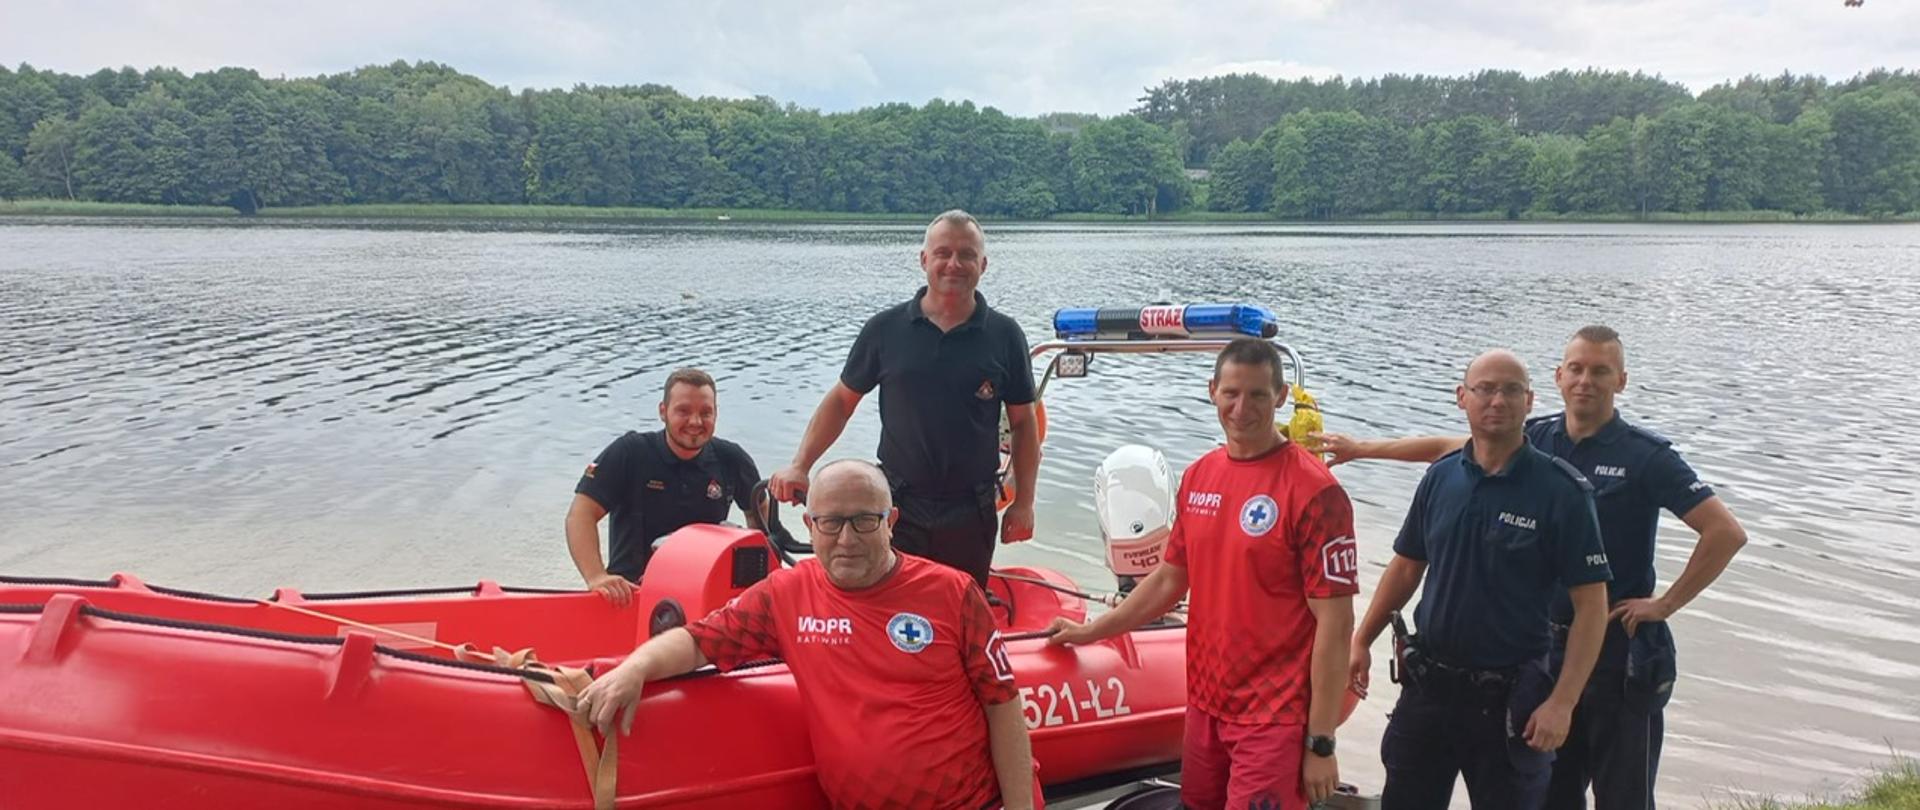 Zdjęcie wykonano w ciągu dnia nad akwenem wodnym, jeziorem, na pierwszym planie łódź ratunkowa motorowa, przy niej dwóch strażaków państwowej straży pożarnej, dwóch funkcjonariuszy policji i dwóch ratowników wodnego ochotniczego pogotowia ratunkowego pozuje do zdjęcia. 